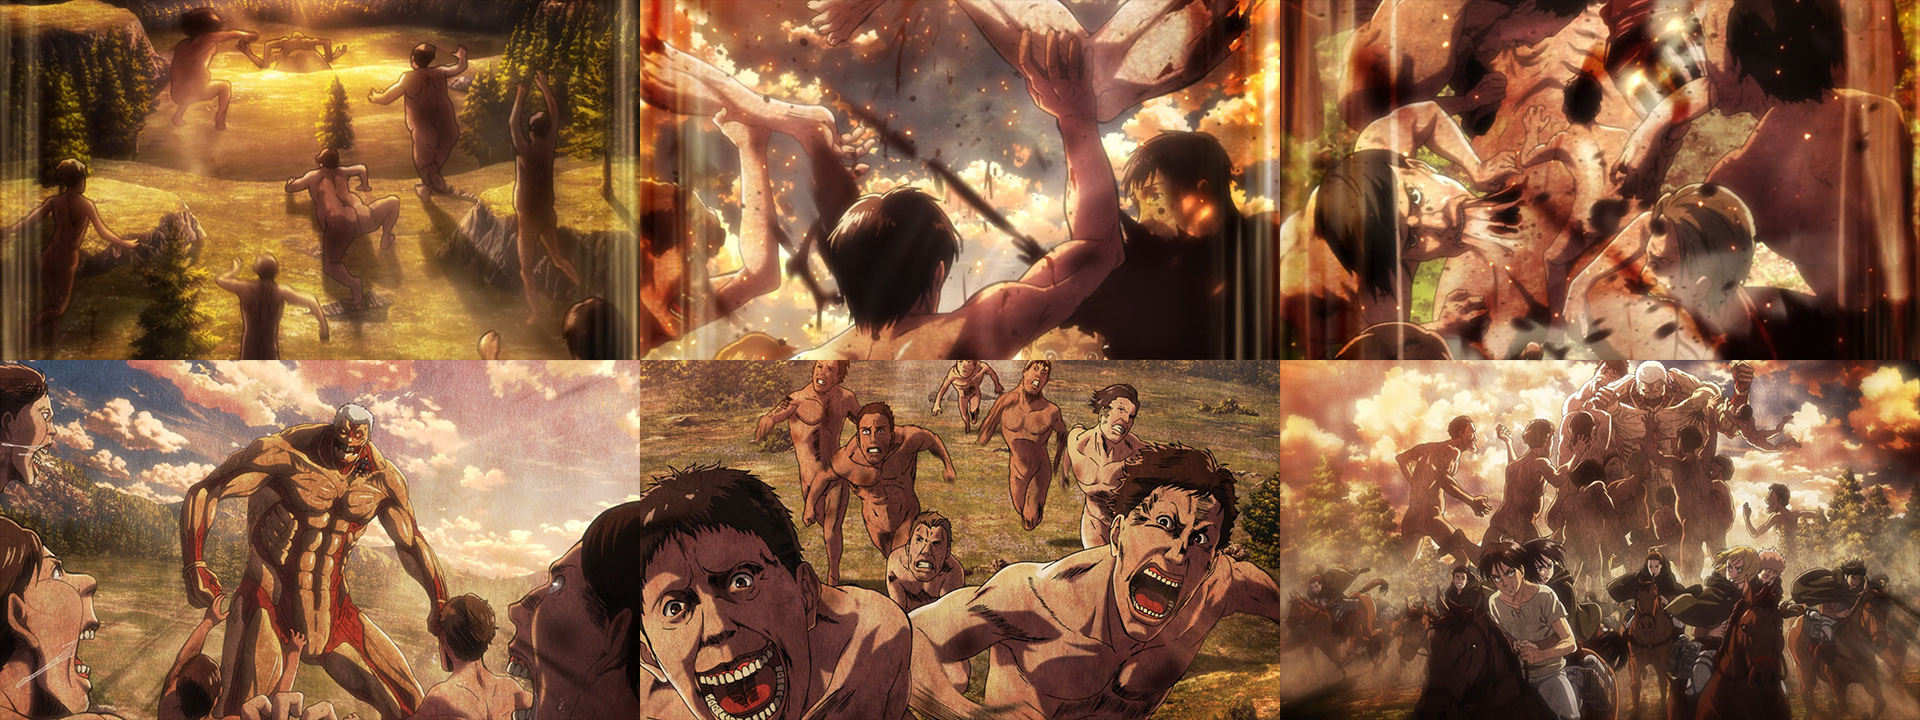 Shingeki No Kyojin – Attack on Titan [Review 2] – Senpuu Tokusatsu